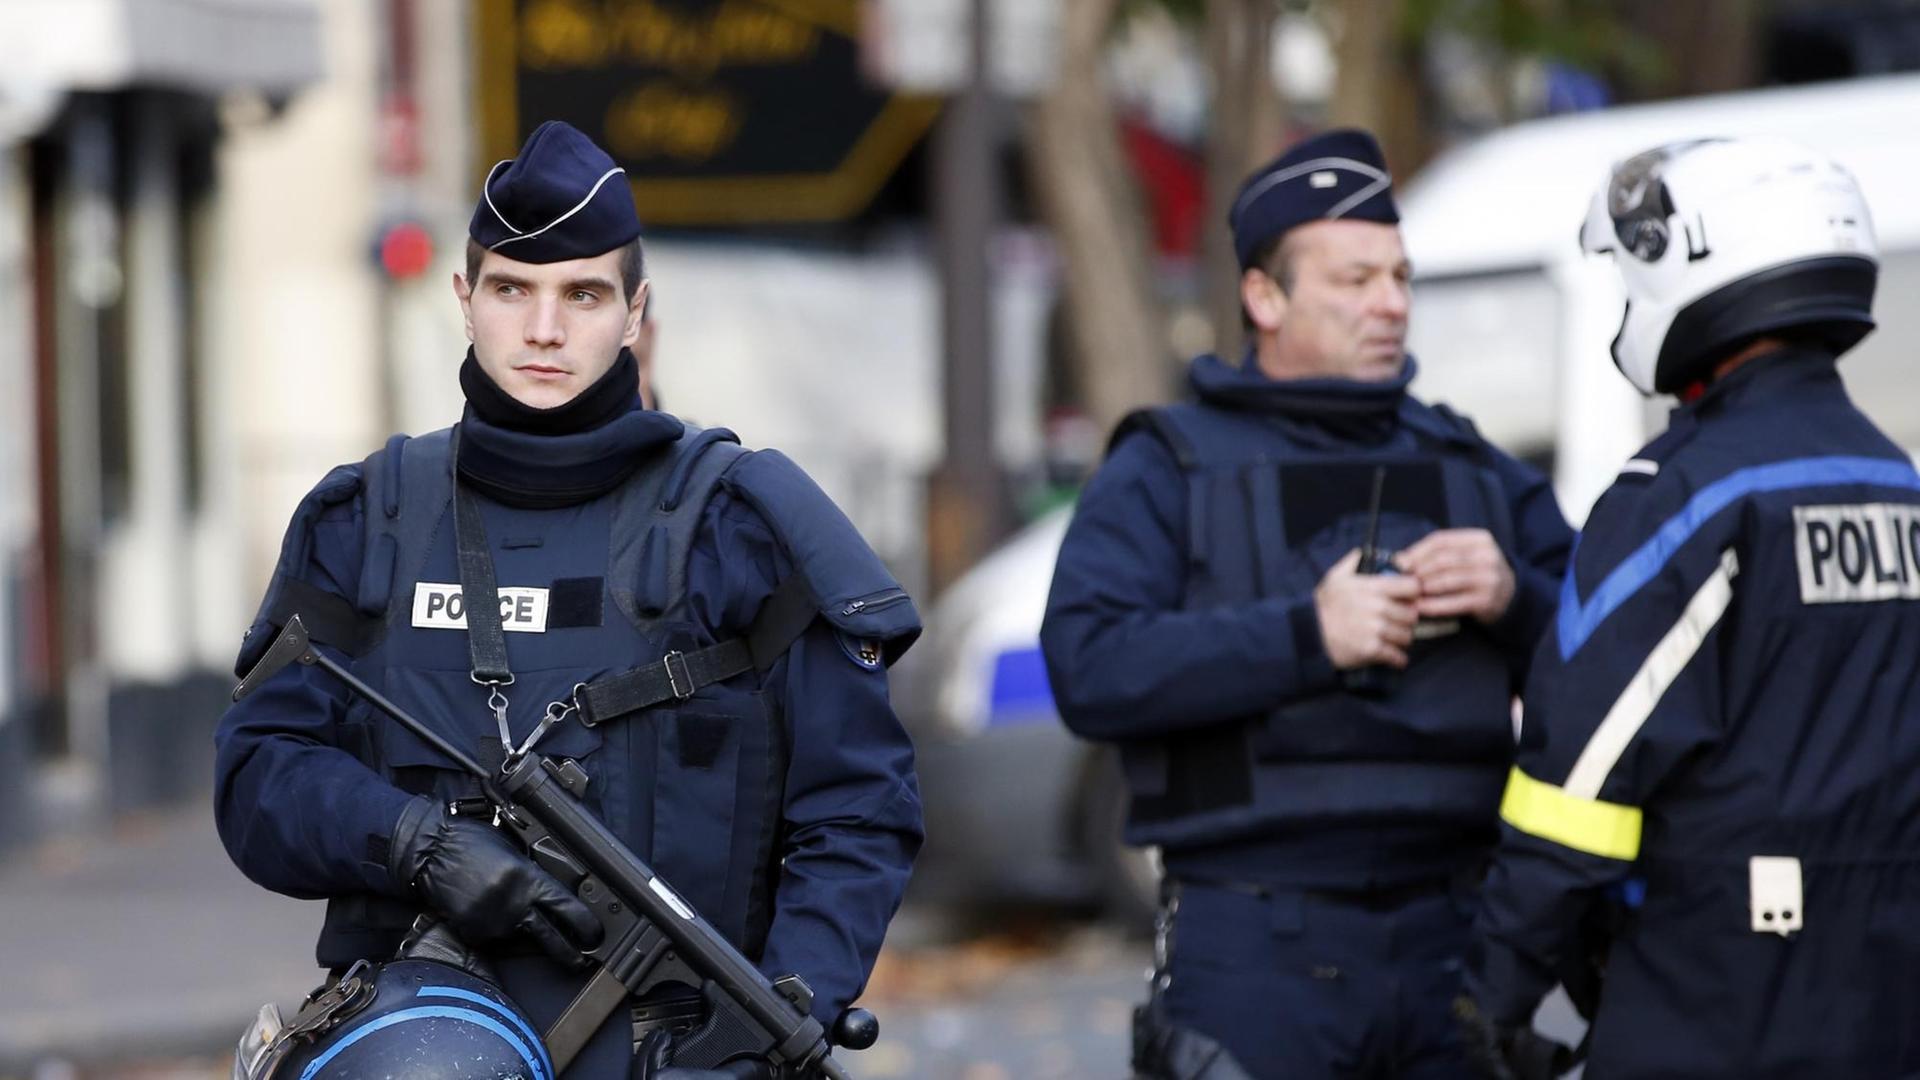 Polizisten patrouillieren nach den Anschlägen in der Nähe der Konzerthalle Bataclan in Paris.